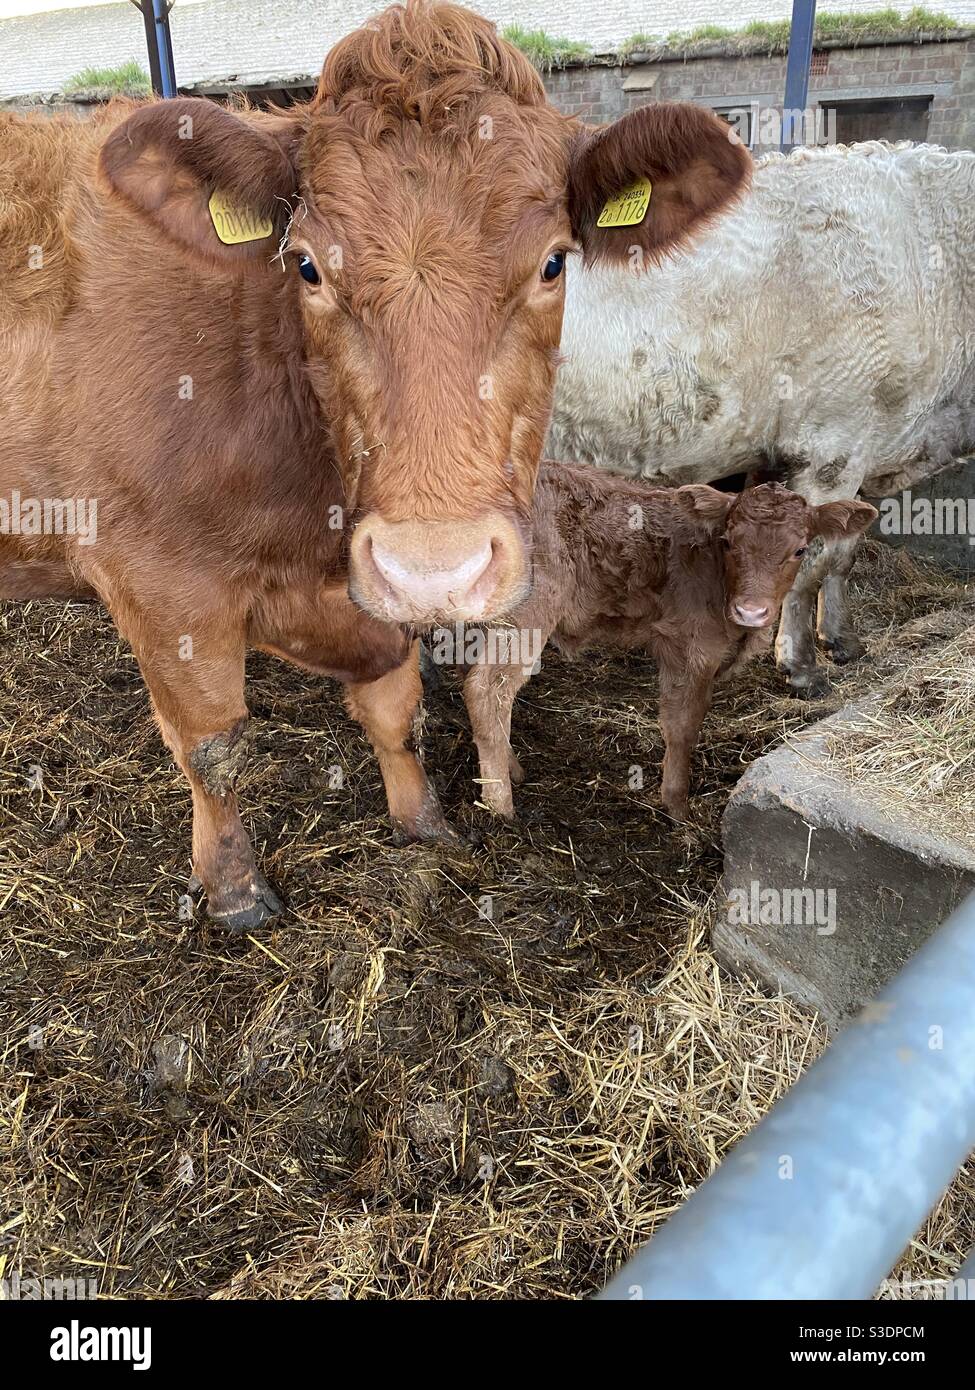 Cow and calf newborn 27th feb 2020 Stock Photo